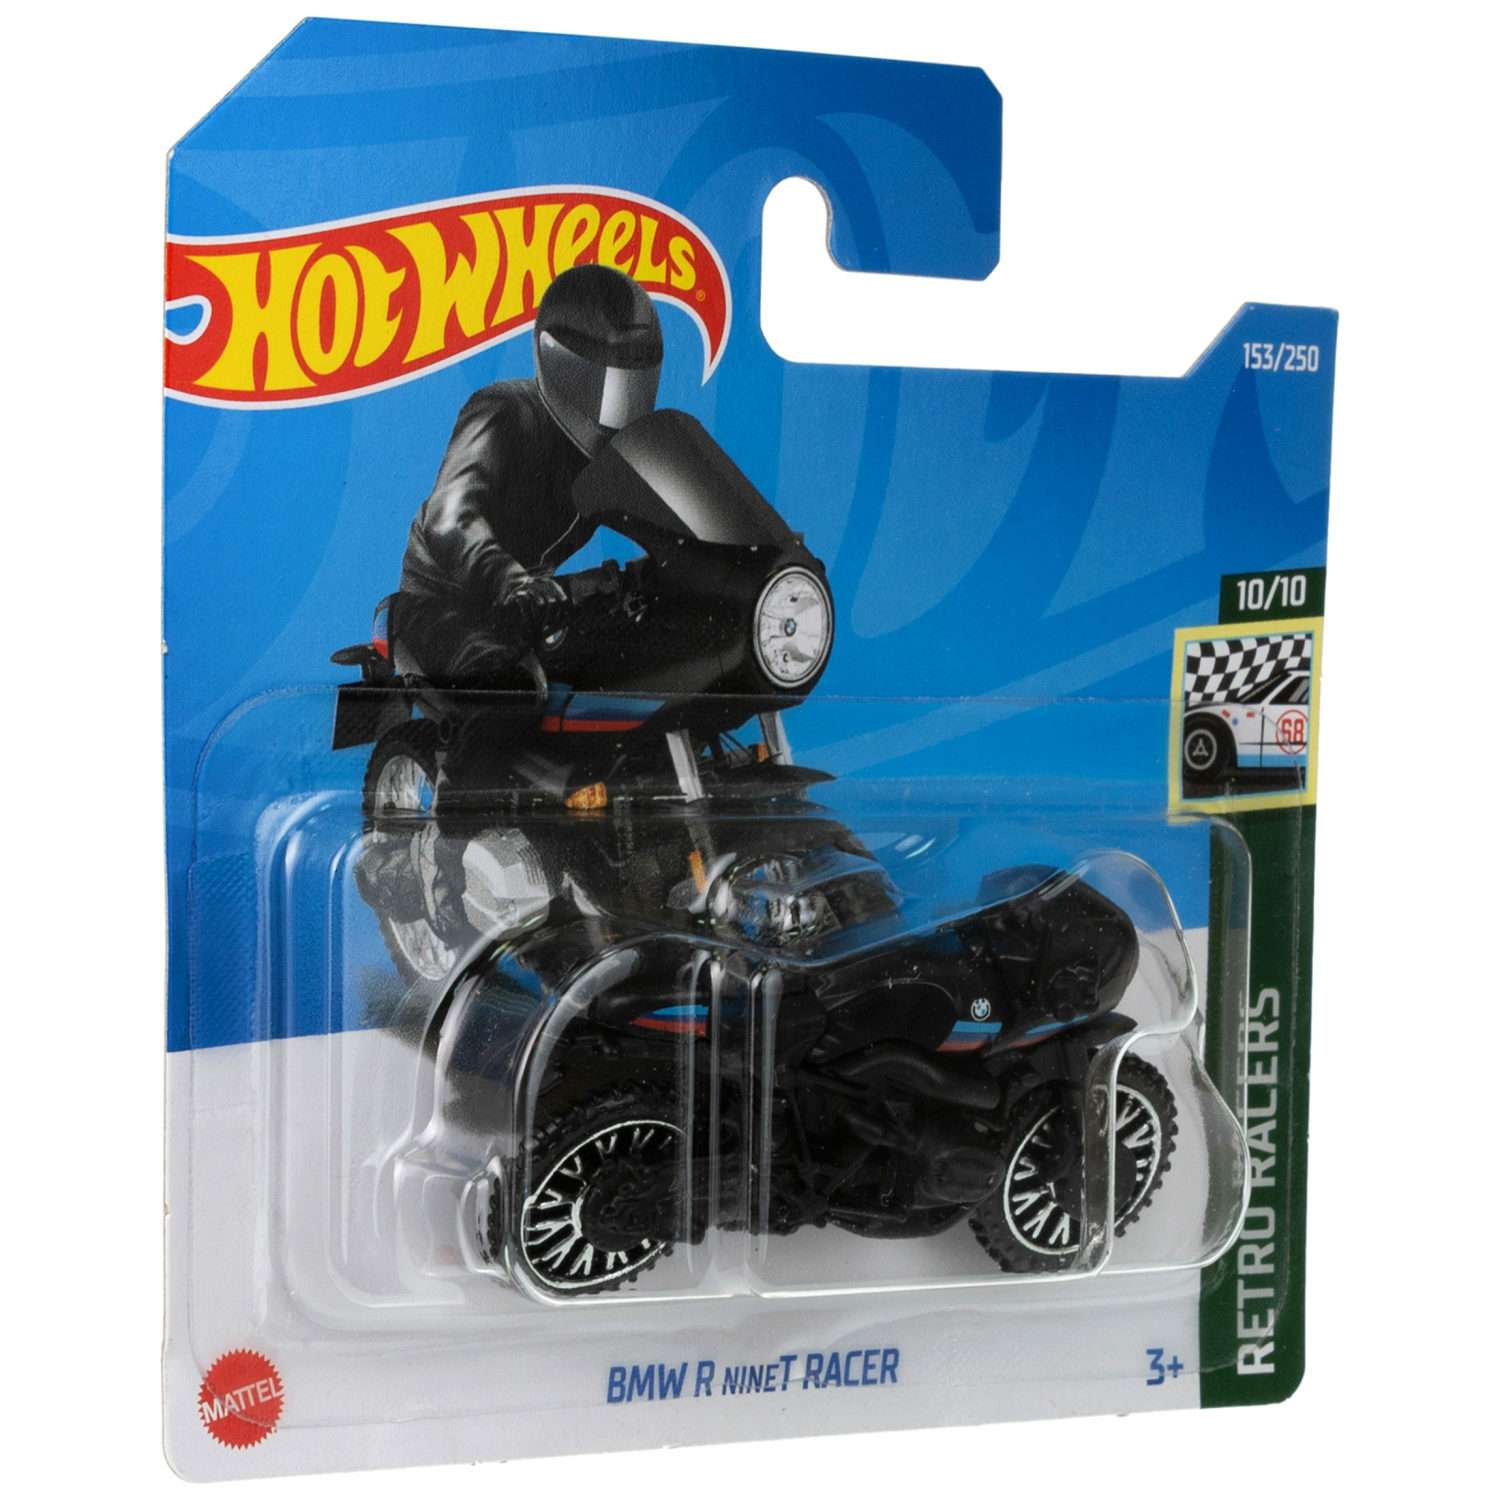 Коллекционная машинка Hot Wheels БМВ r ninet racer 5785-110 - фото 5